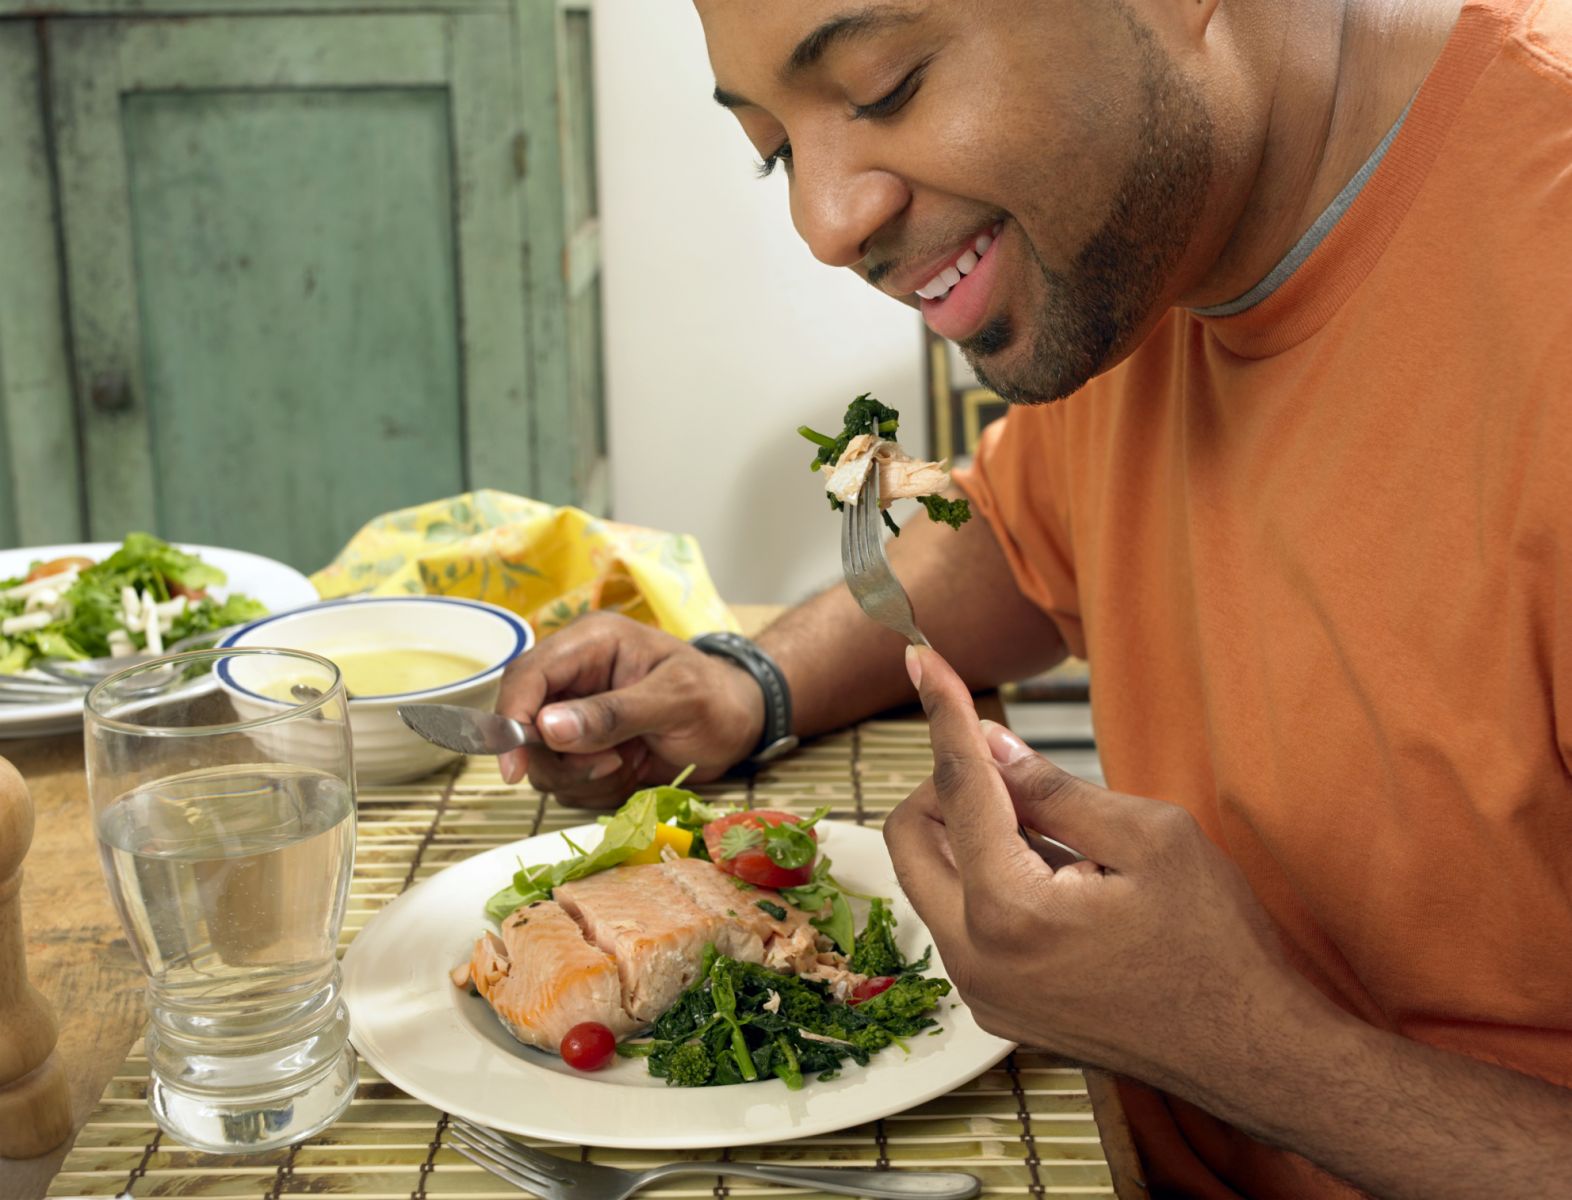  L'homme mangeant du saumon, une bonne source d'acides gras oméga-3 protégeant le cœur